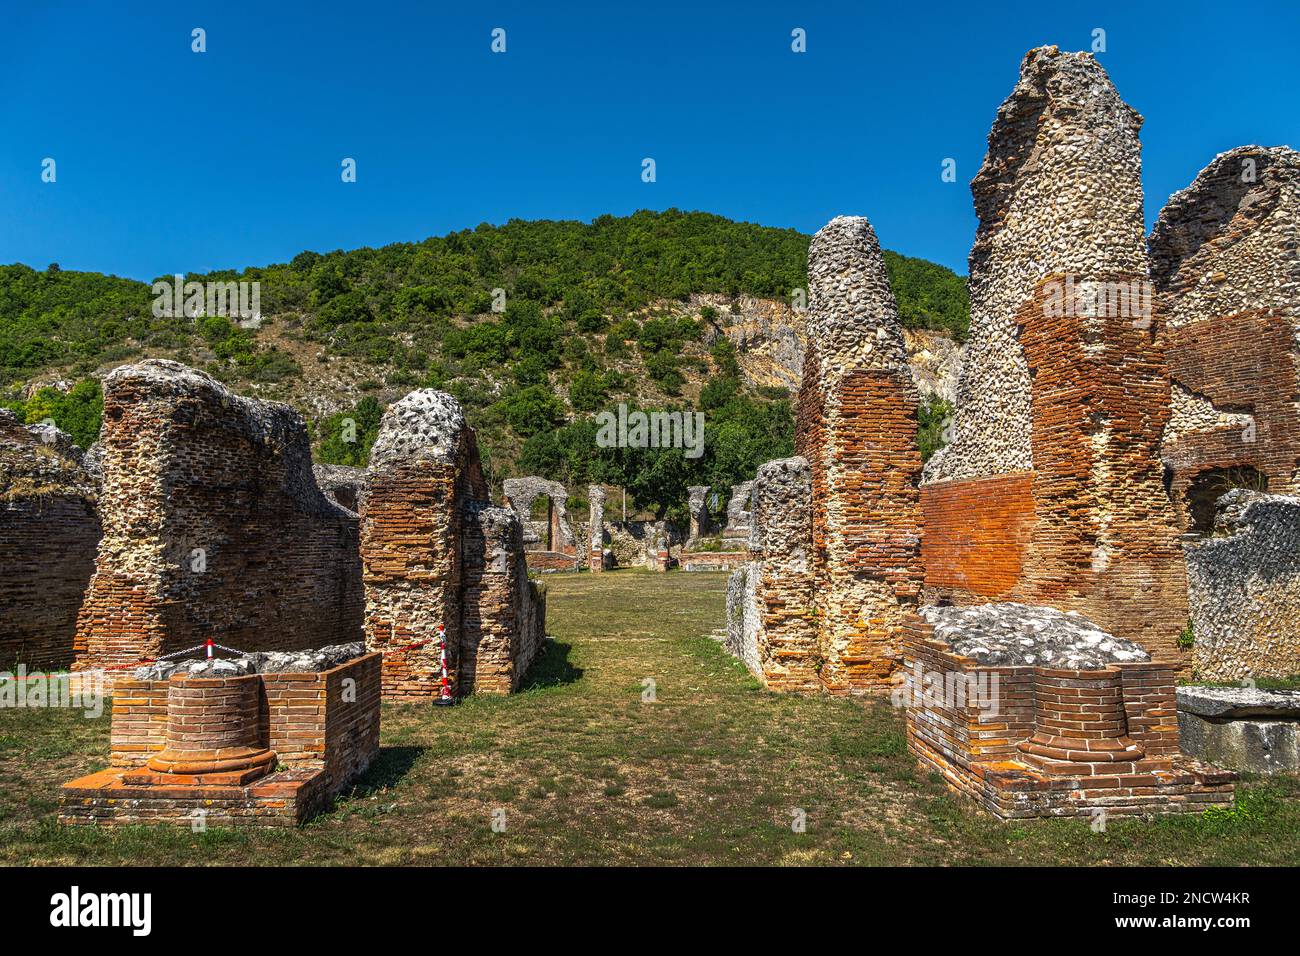 Il sito archeologico di Amiternum, antica città italica fondata dai Sabini, a nord dell'Aquila. San Vittorino, provincia dell'Aquila, Abruzzo, Ita Foto Stock